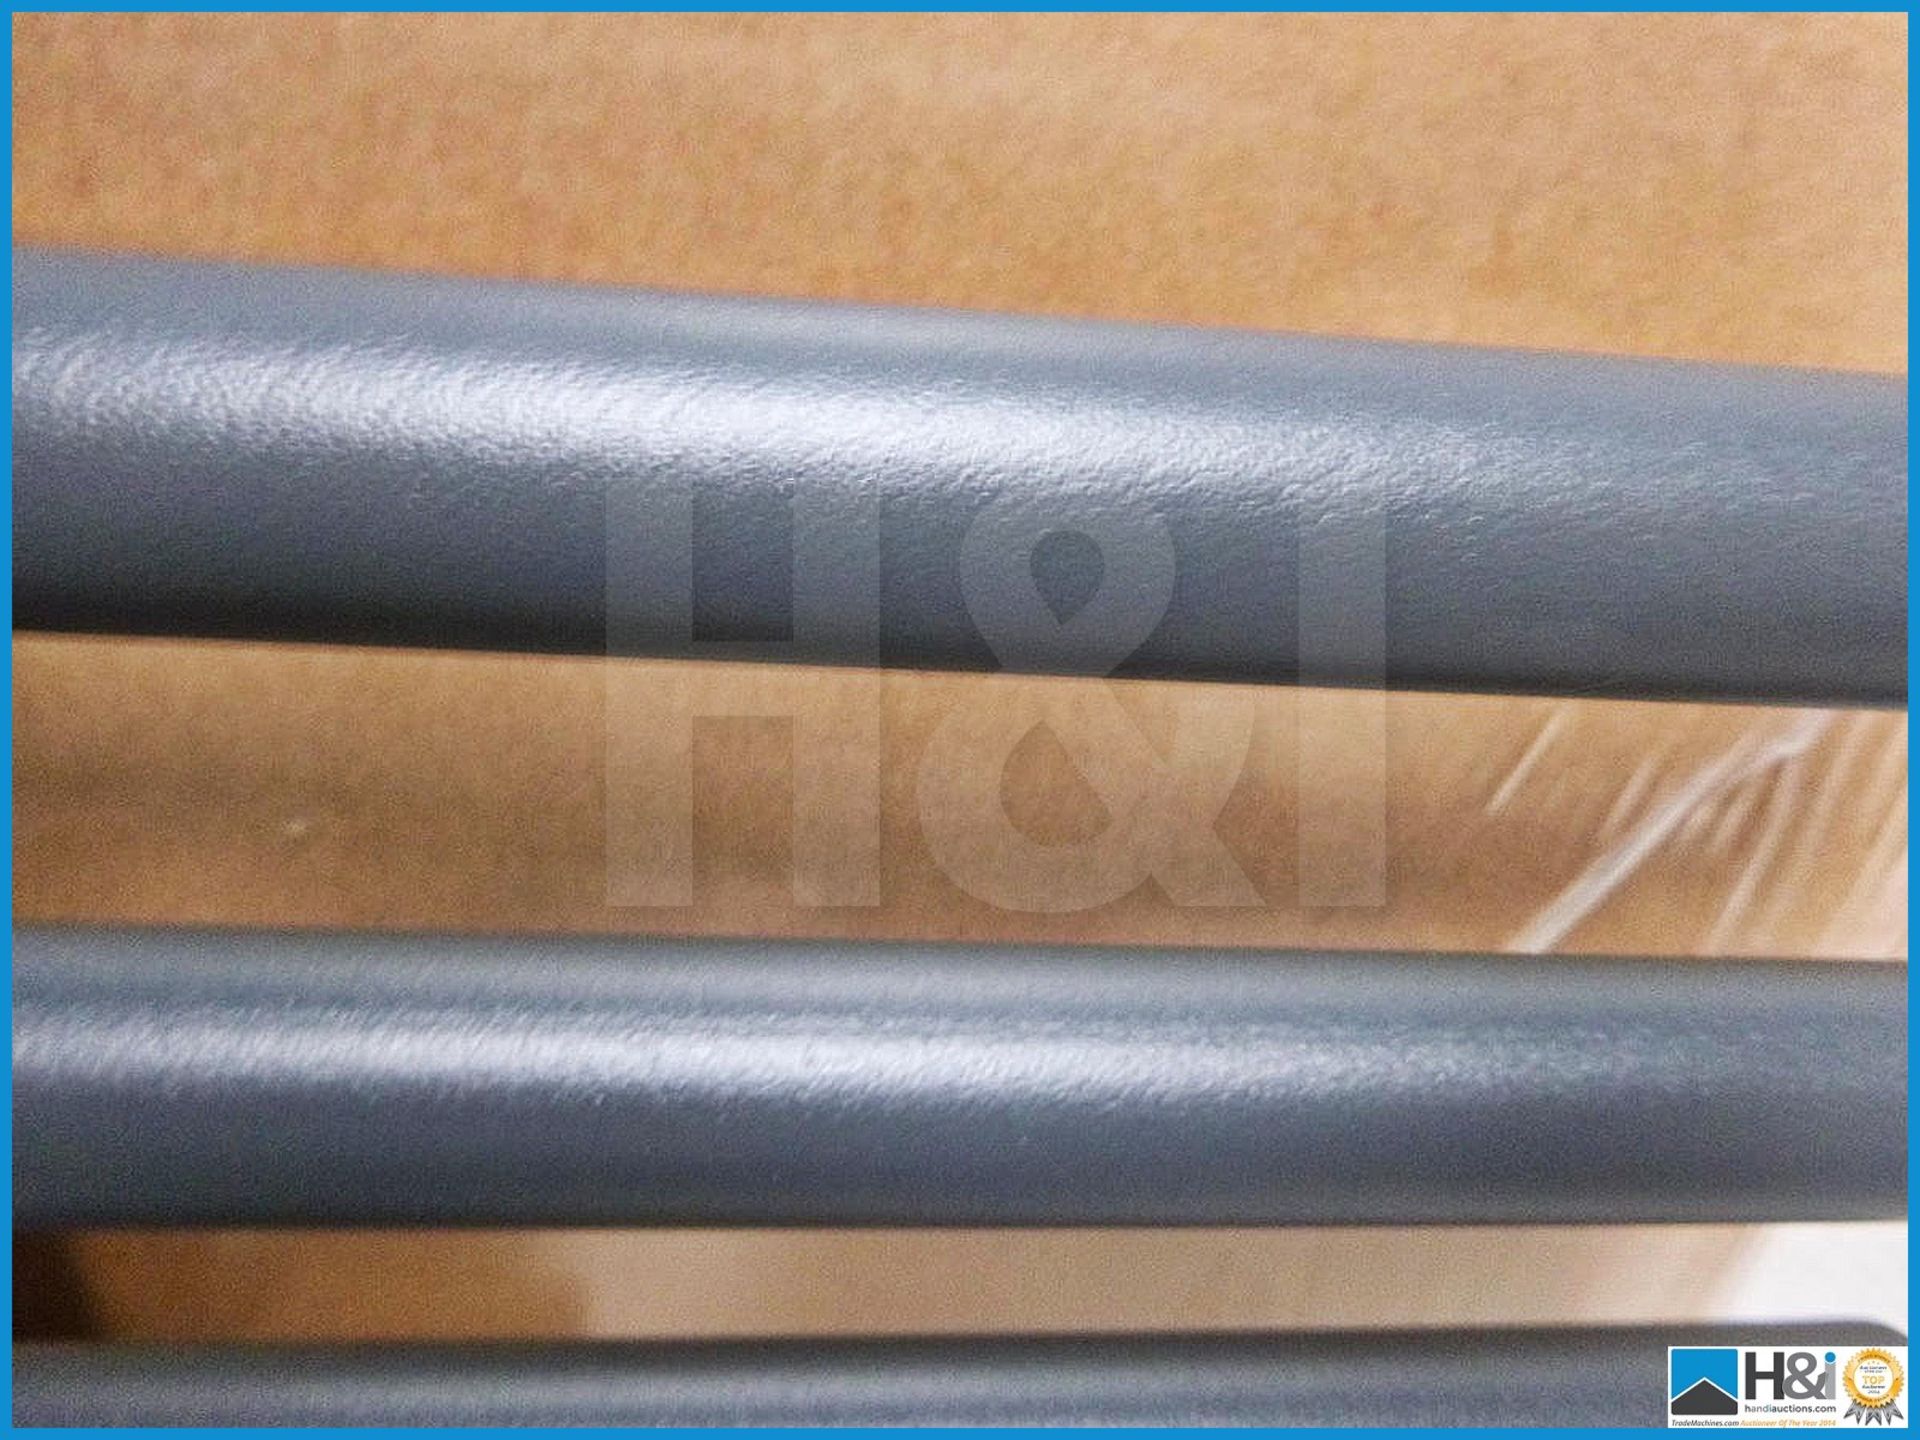 Designer tube on tube alternate rail towel radiator in matt gray 715mm X 550mm. RRP £289. - Image 3 of 3